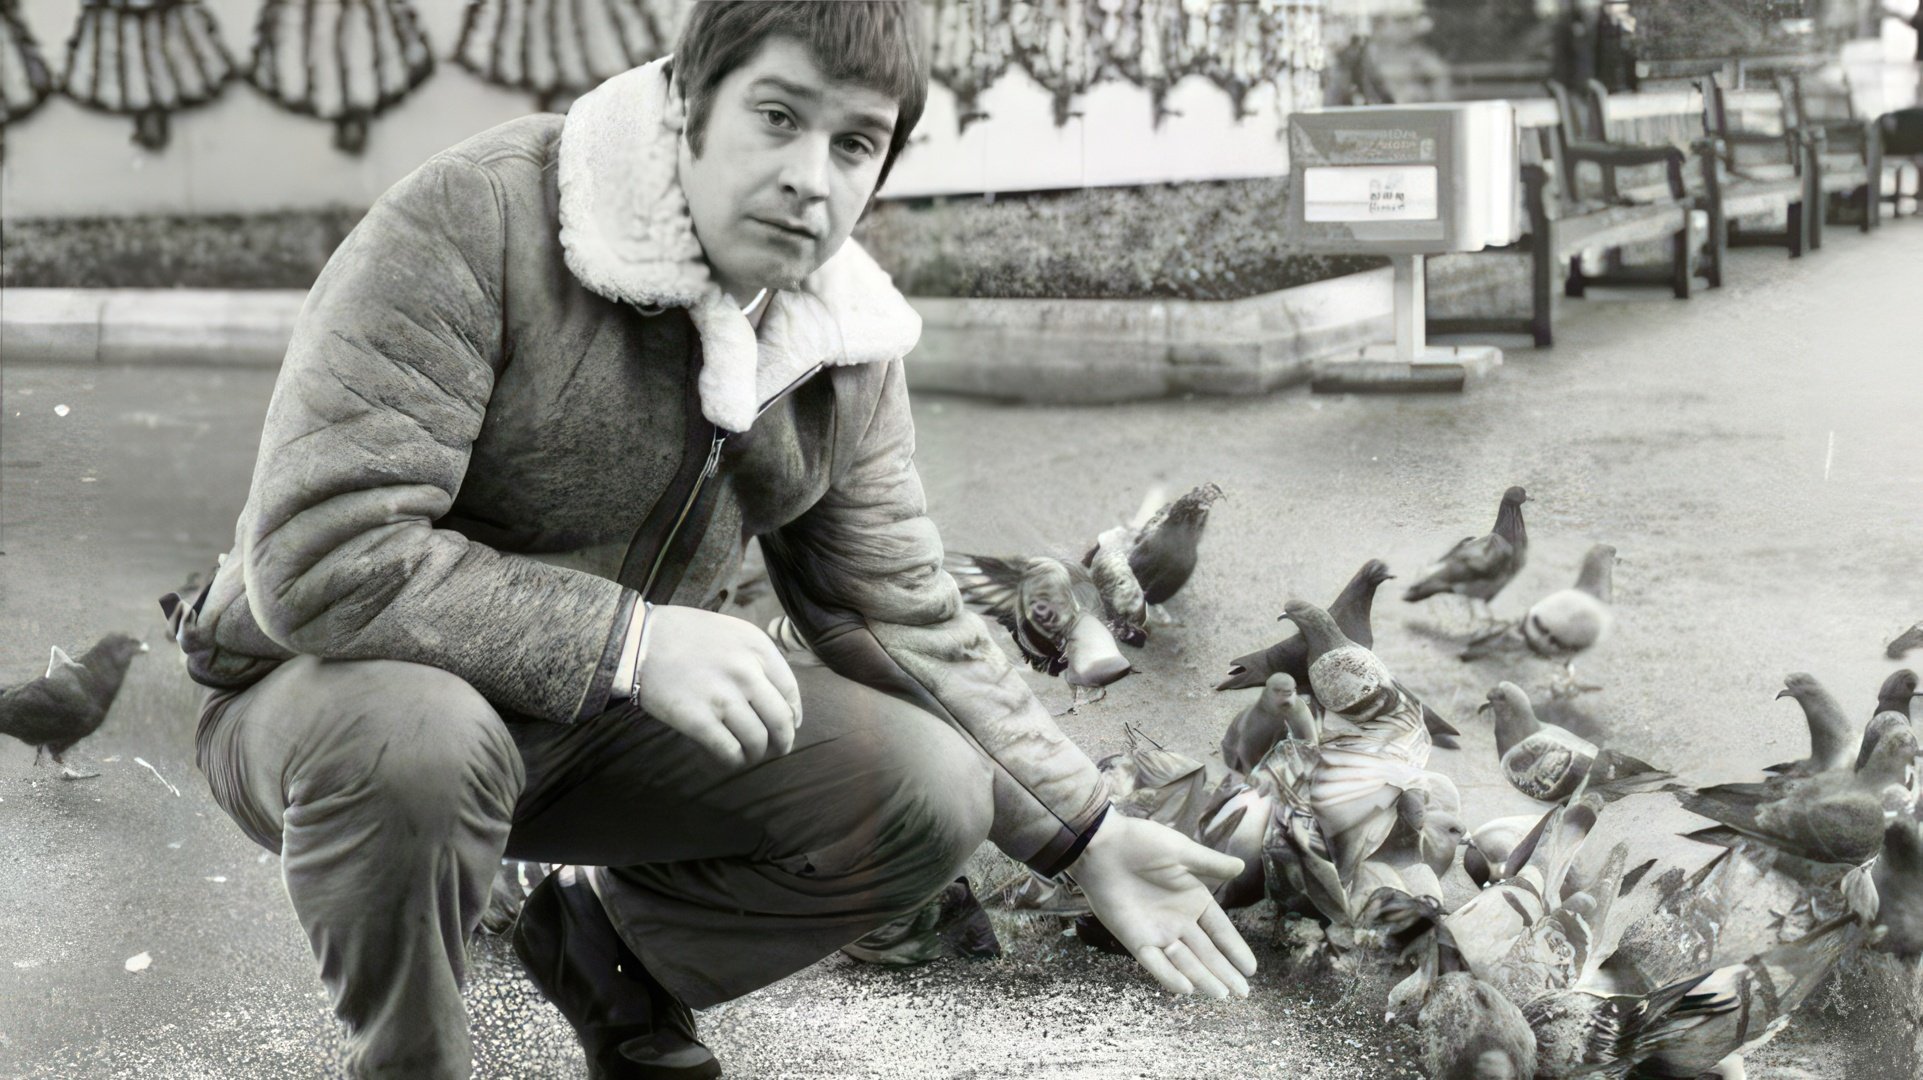 Ozzy Osbourne feeds pigeons